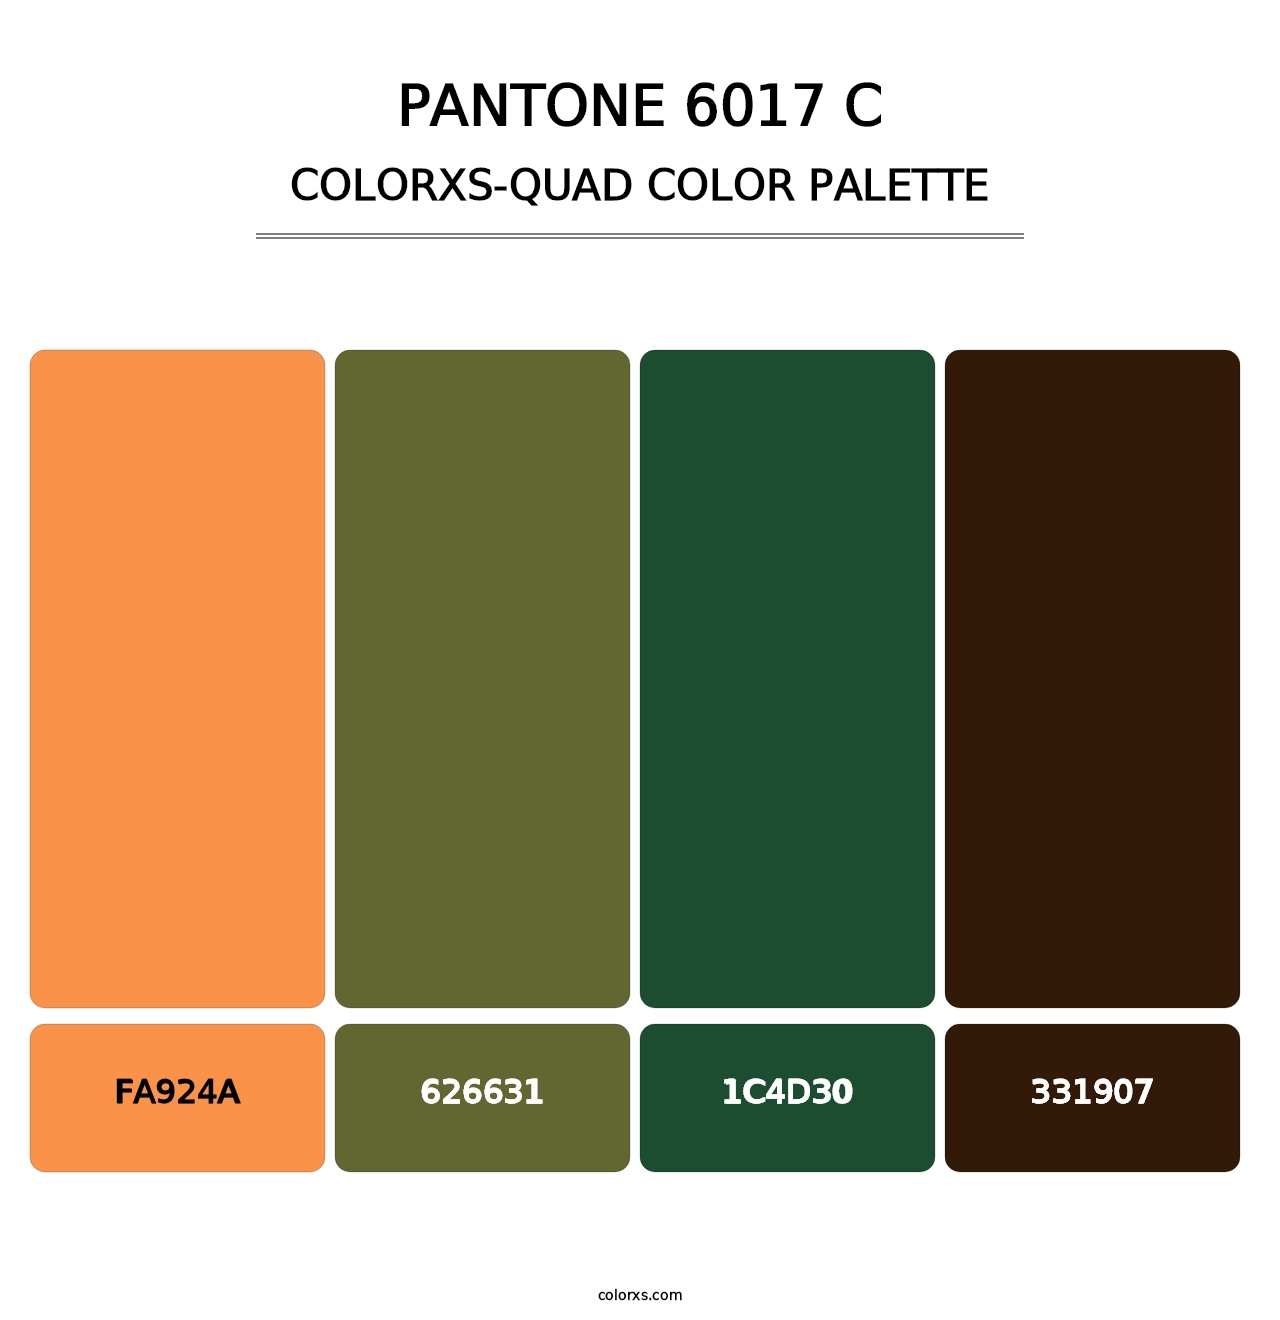 PANTONE 6017 C - Colorxs Quad Palette